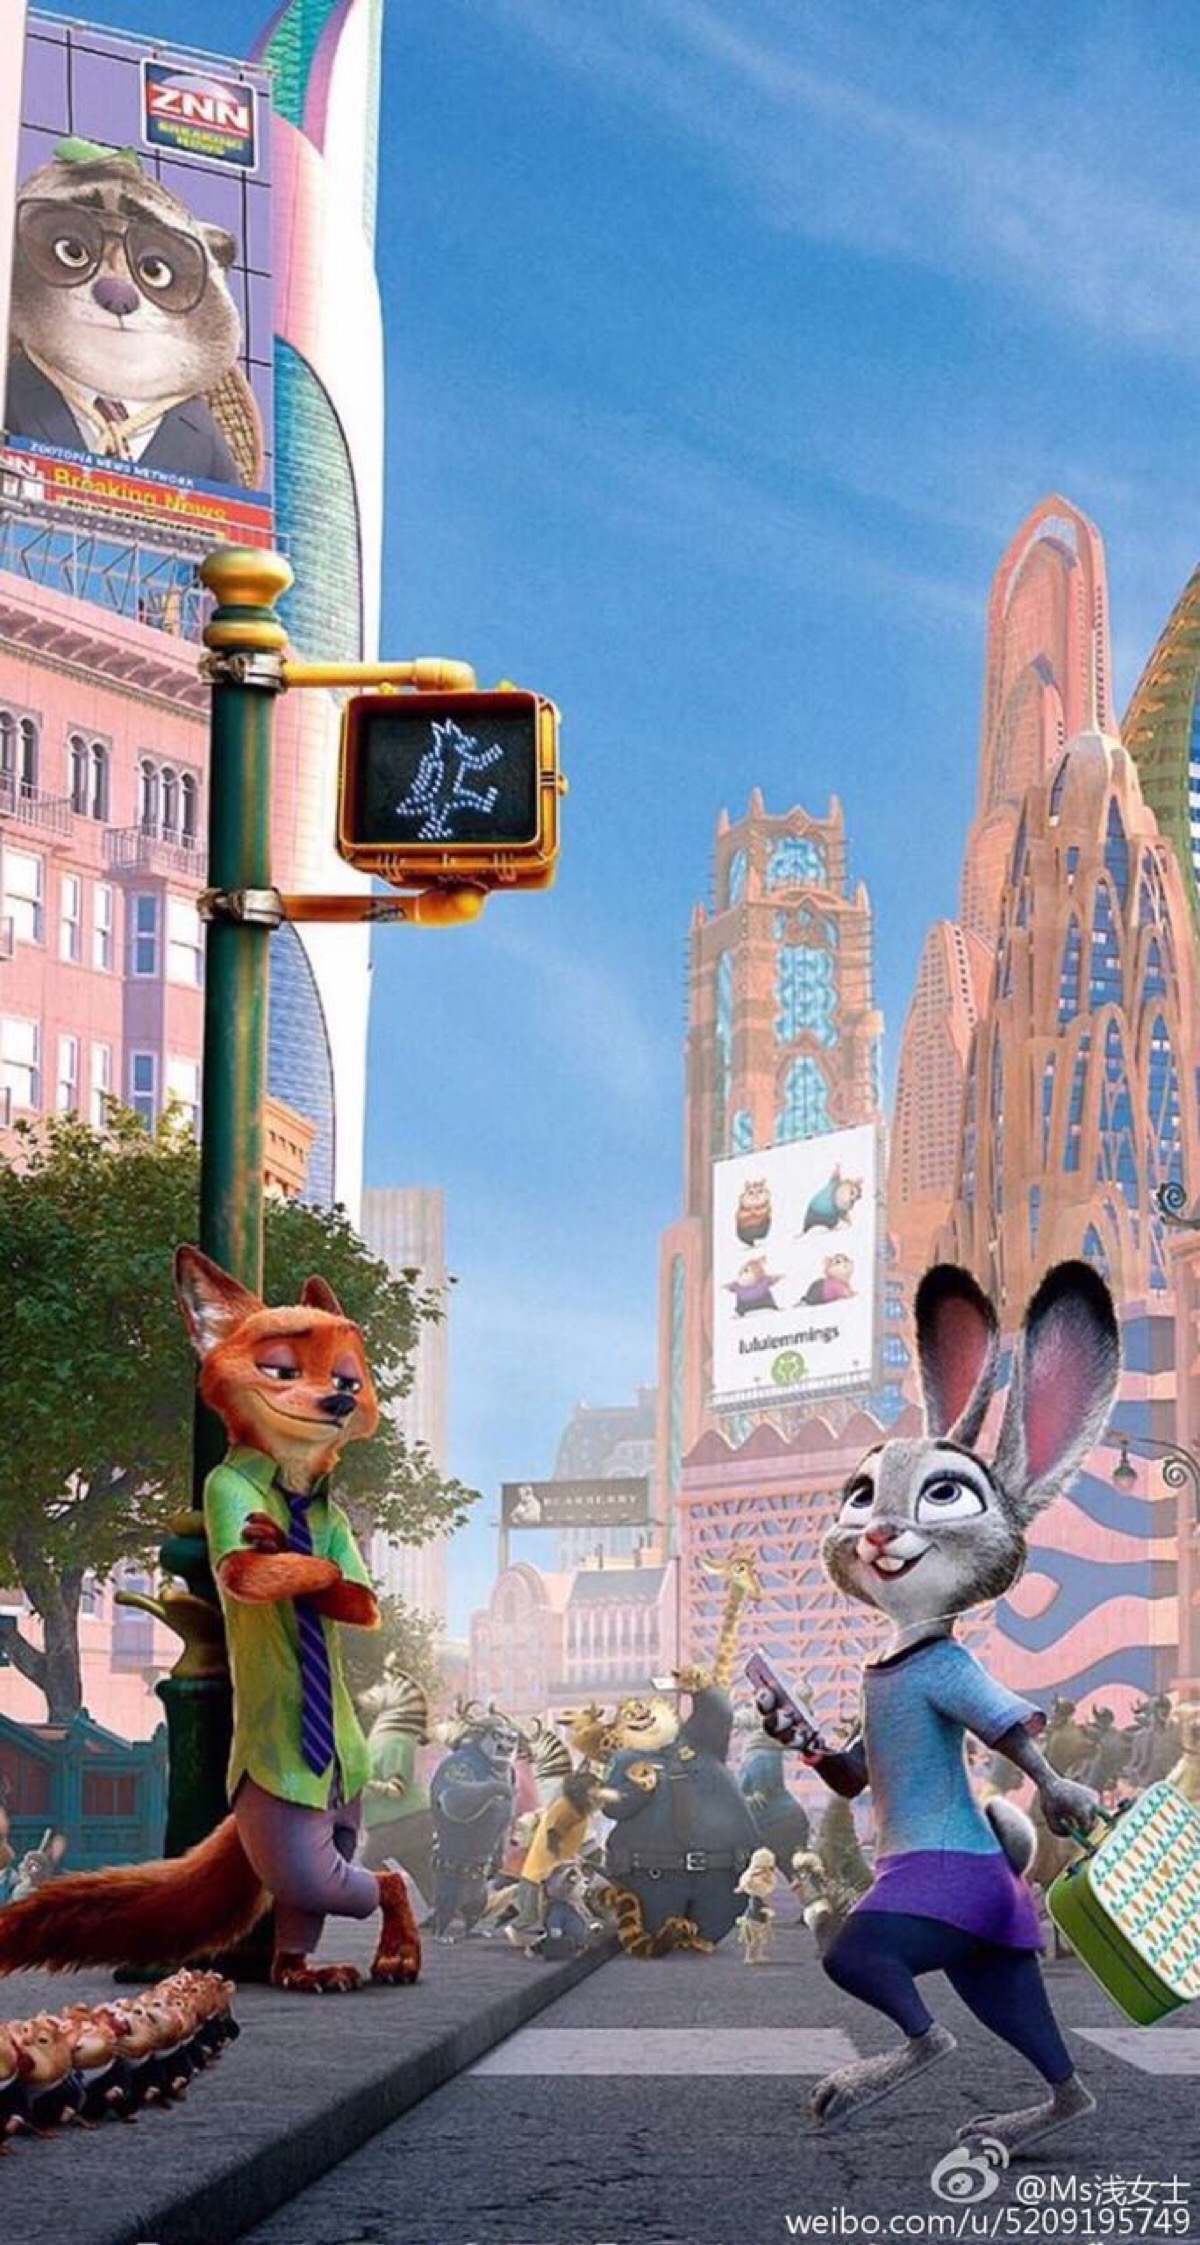 迪士尼壁纸-疯狂动物城-狐尼克&兔子朱迪-壁… - 堆糖，美图壁纸兴趣社区